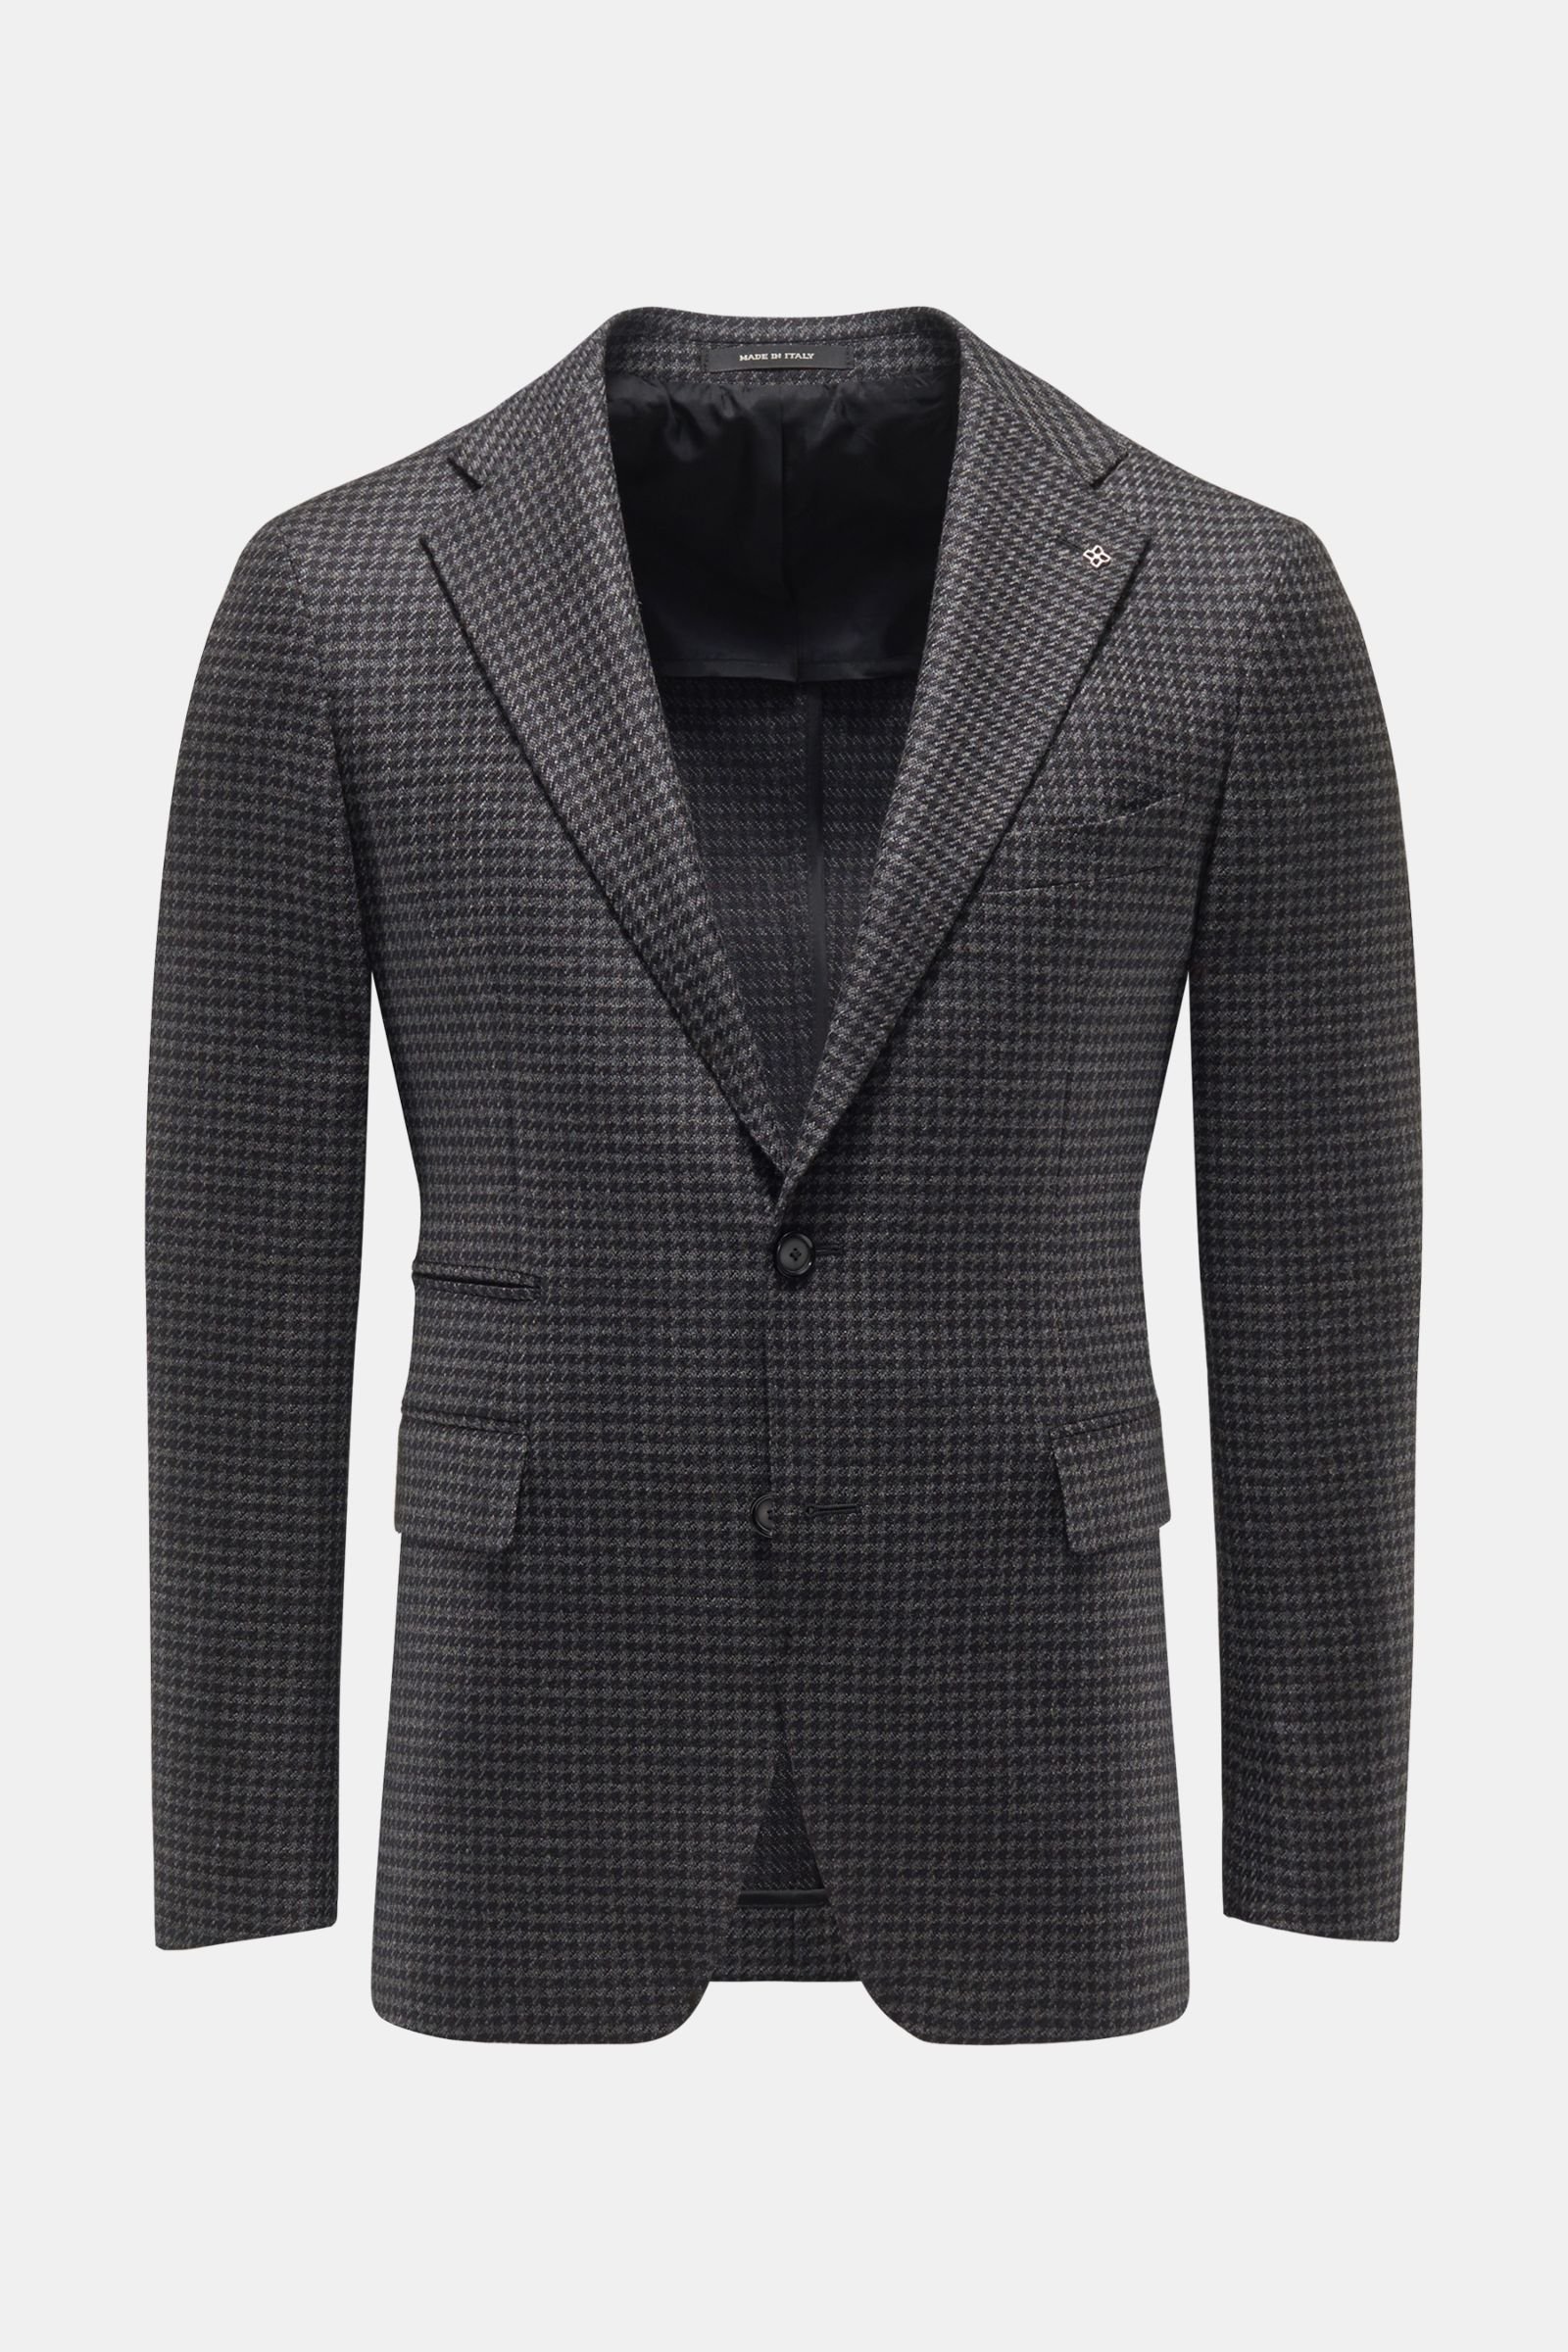 Smart-casual jacket dark grey checked